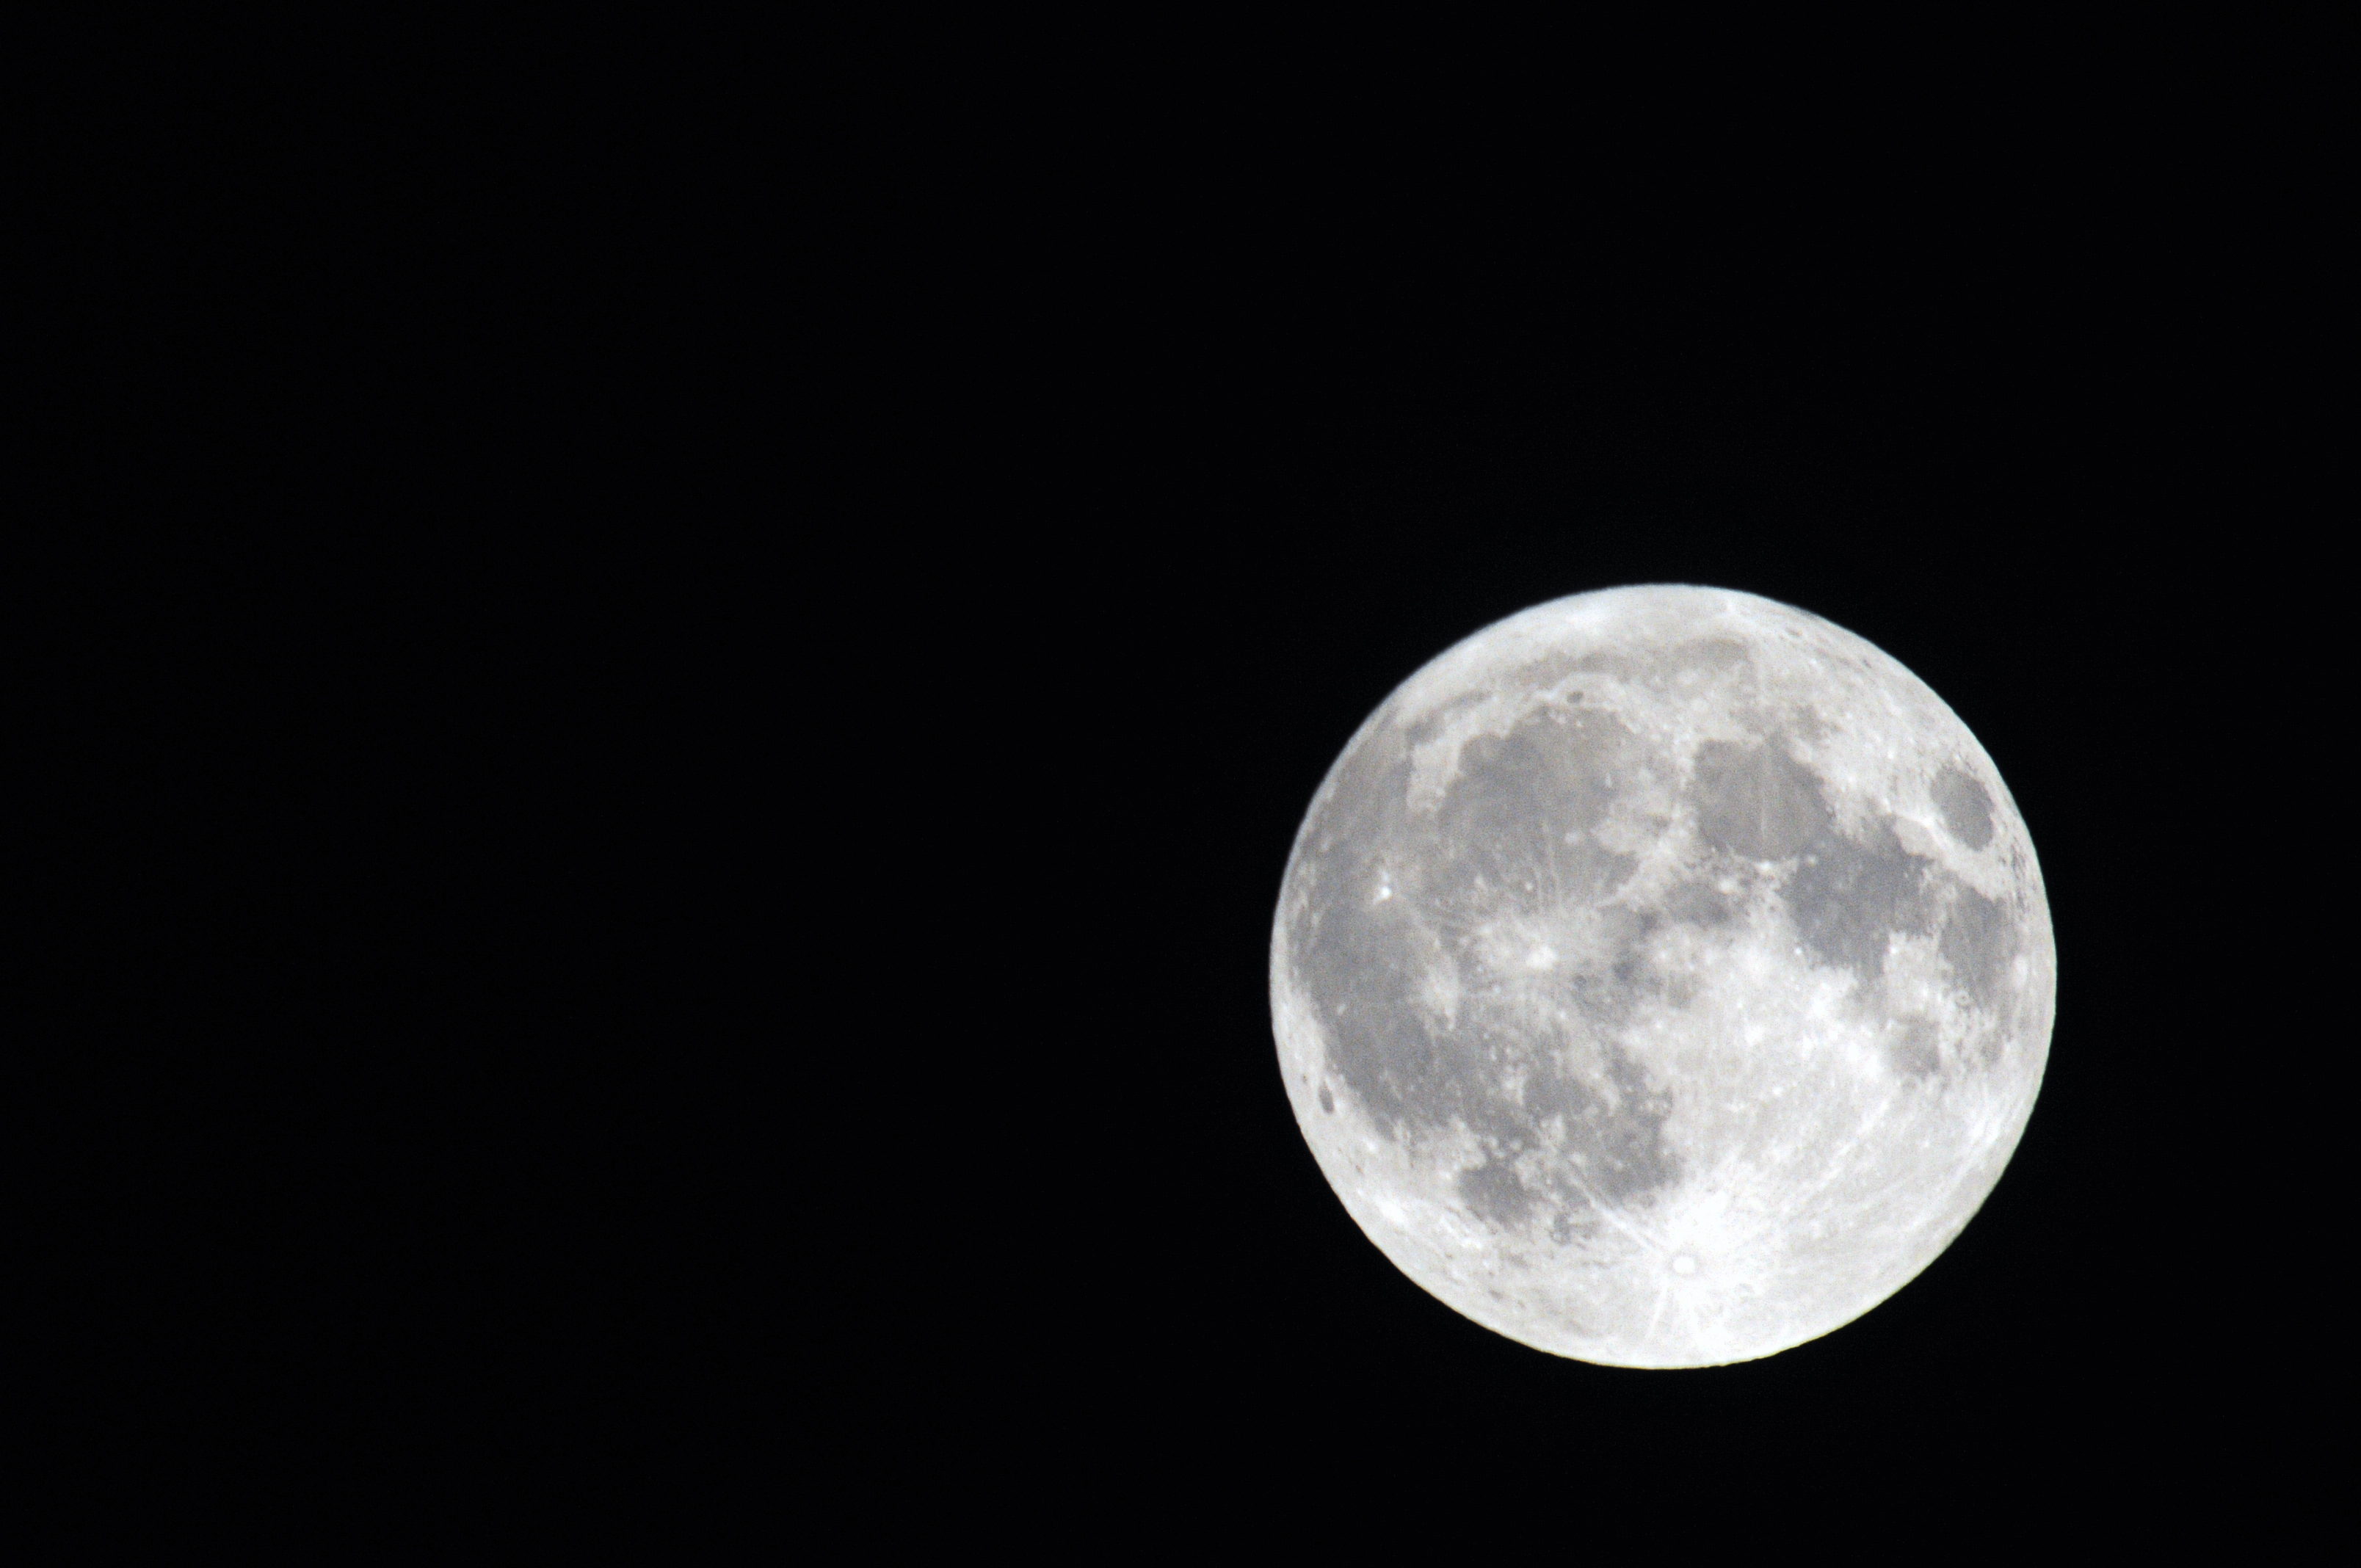 Full Moon Previous Photo Next